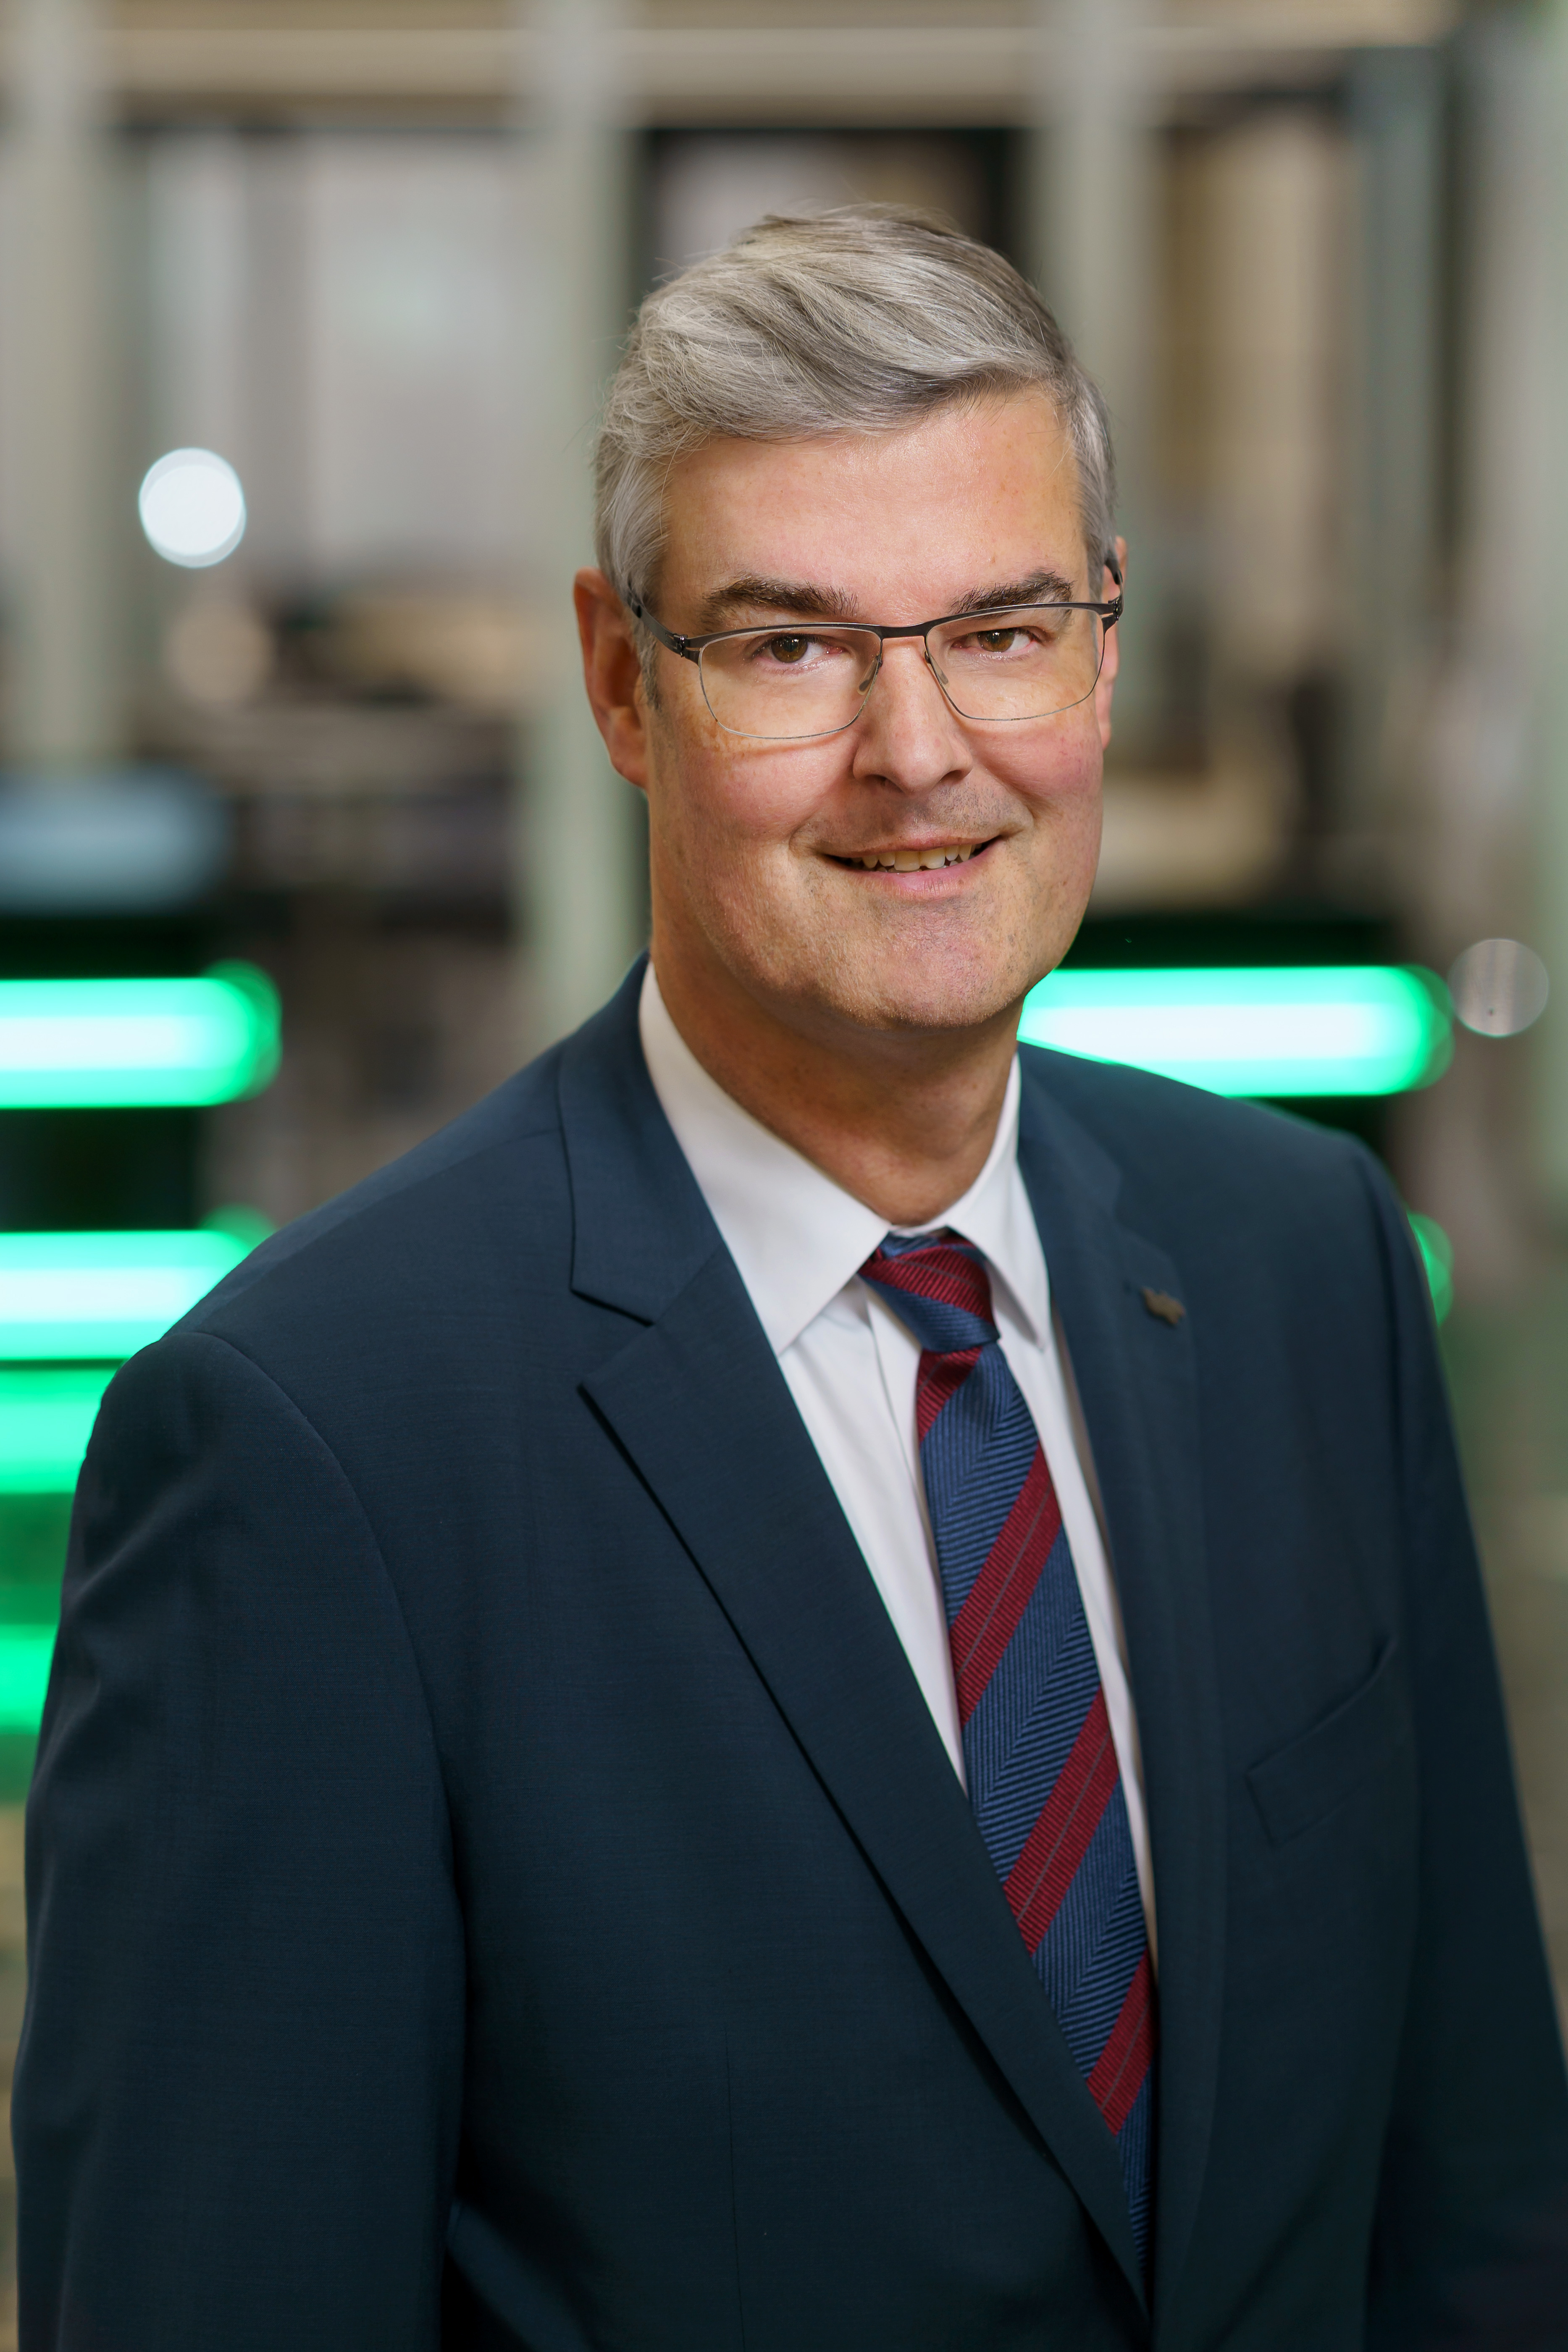 Portraitfoto:Markus Schlüter ist Beigeordneter für den Bereich II Wirtschaftsführung und stellvertretender Verbandsdirektor des Regionalverband Ruhr (RVR).